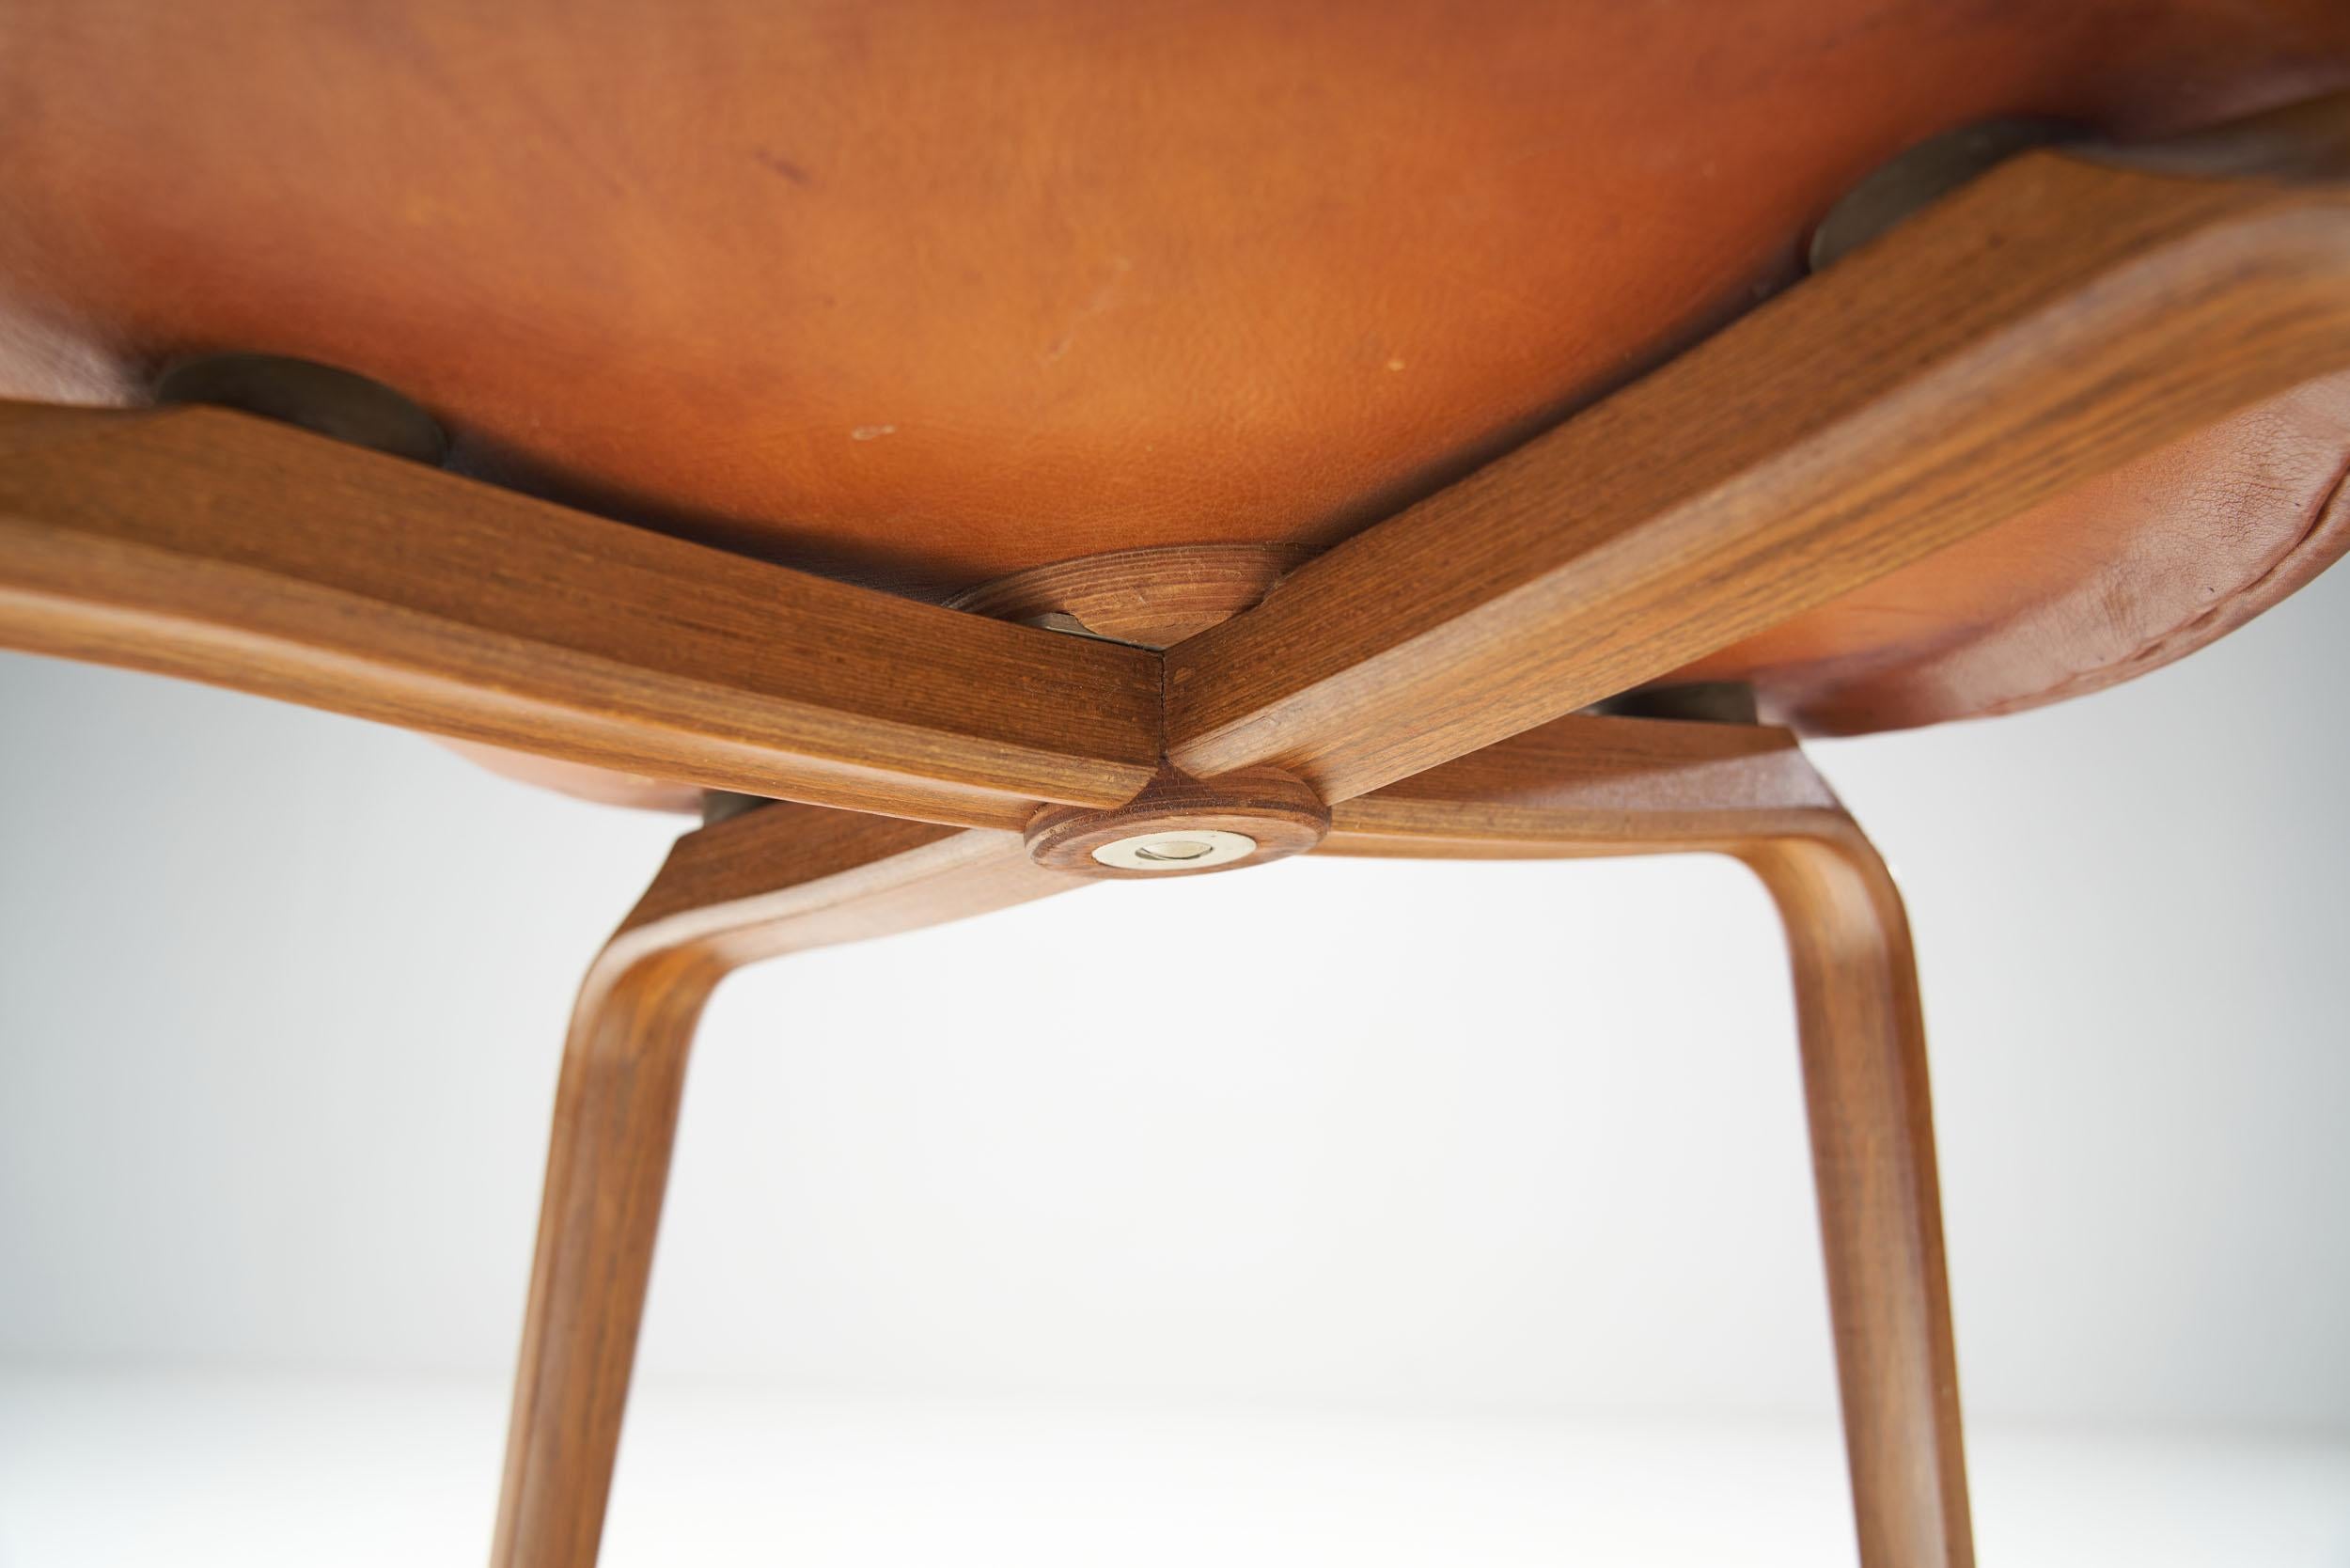 Arne Jacobsen “Grand Prix” Chairs for Fritz Hansen, Denmark 1950s For Sale 7